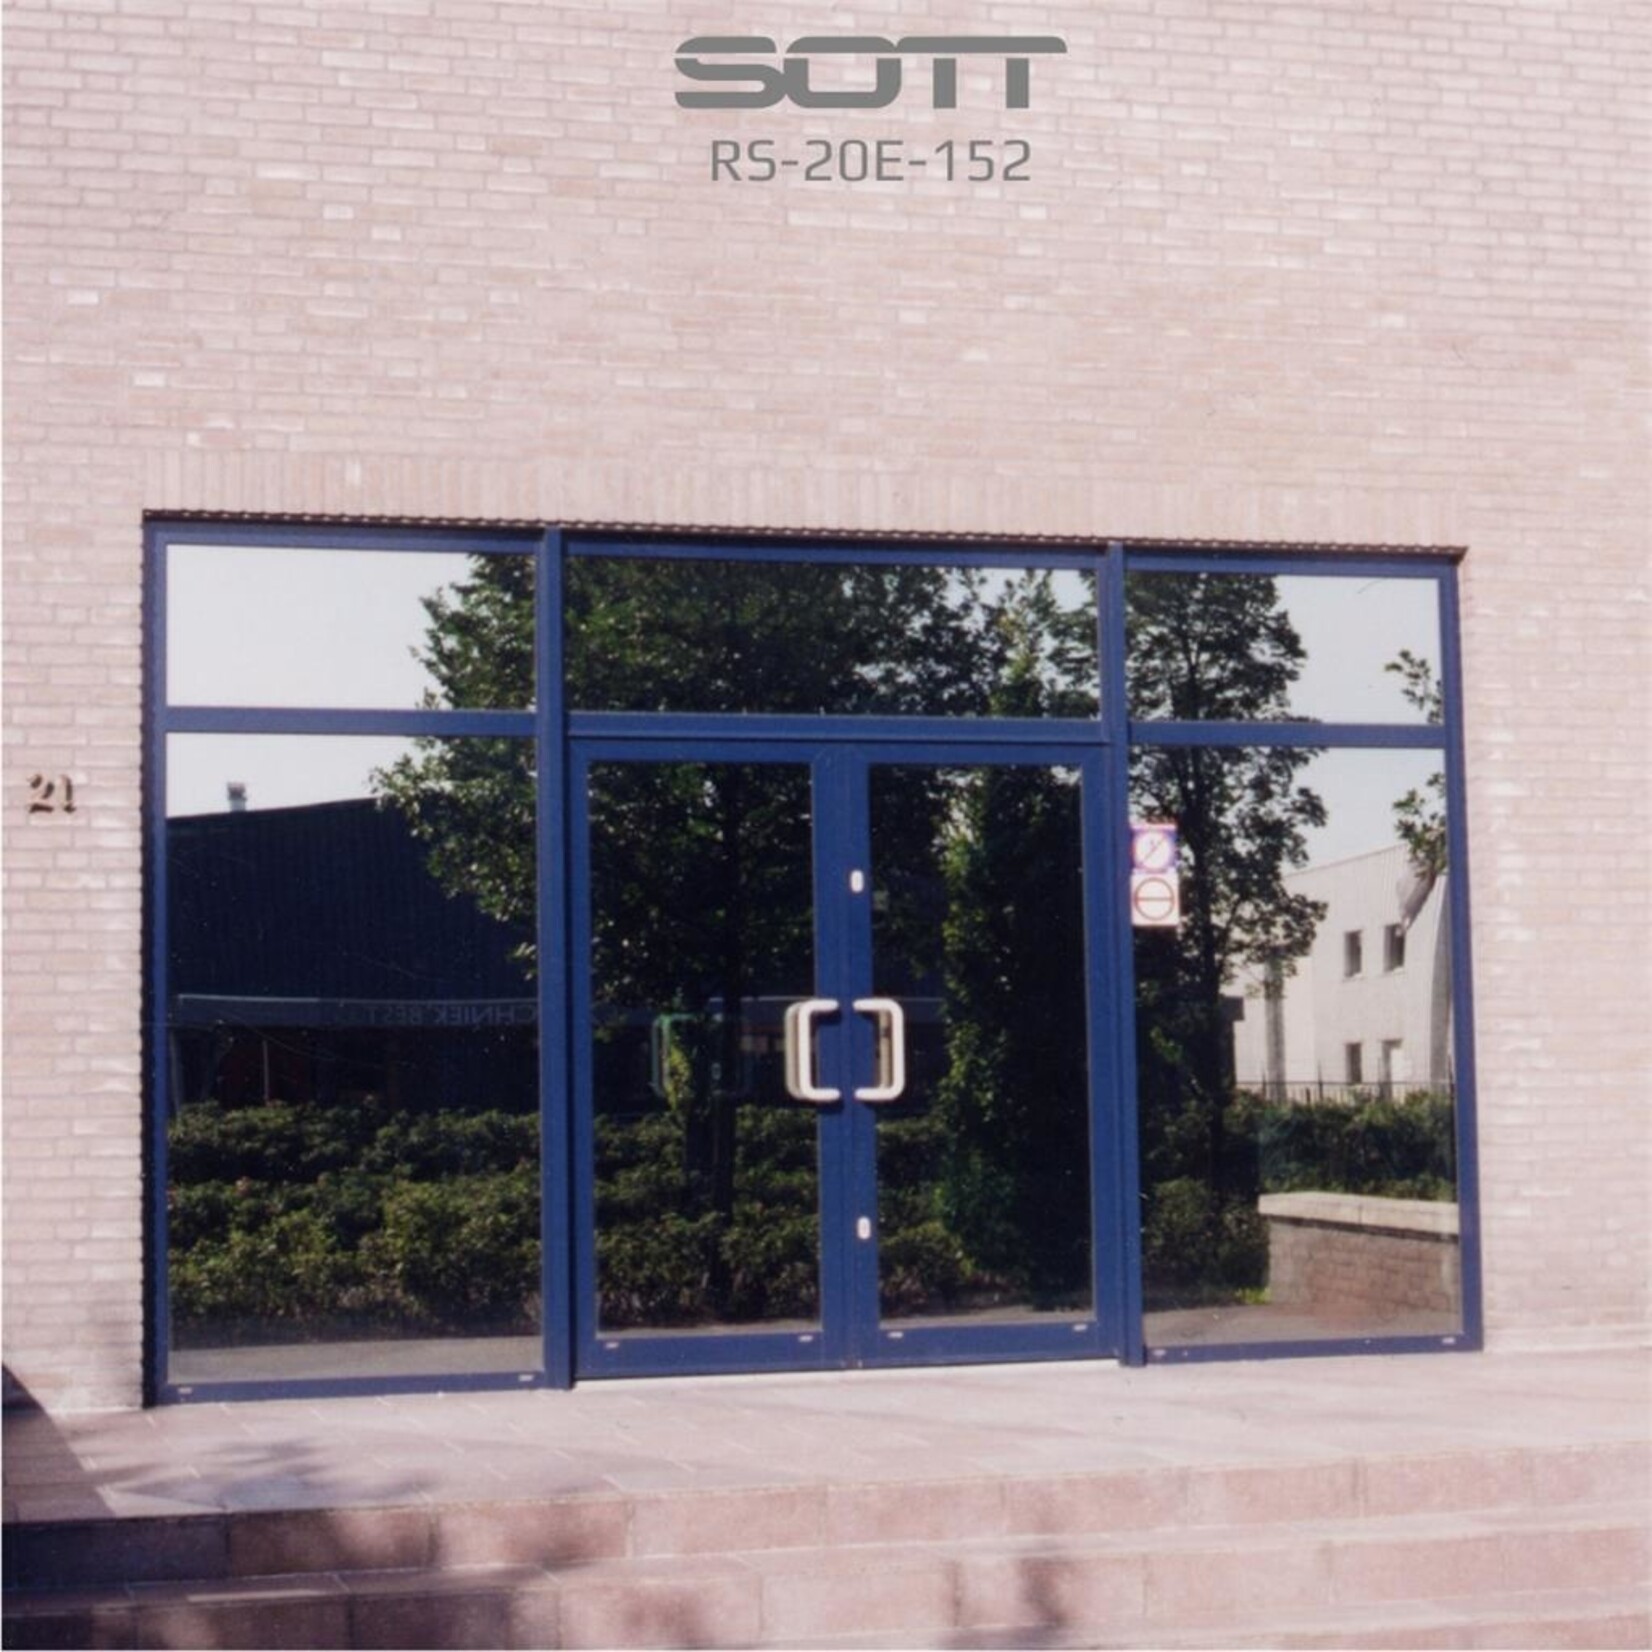 SOTT® Reflective Silver 20E -152 cm